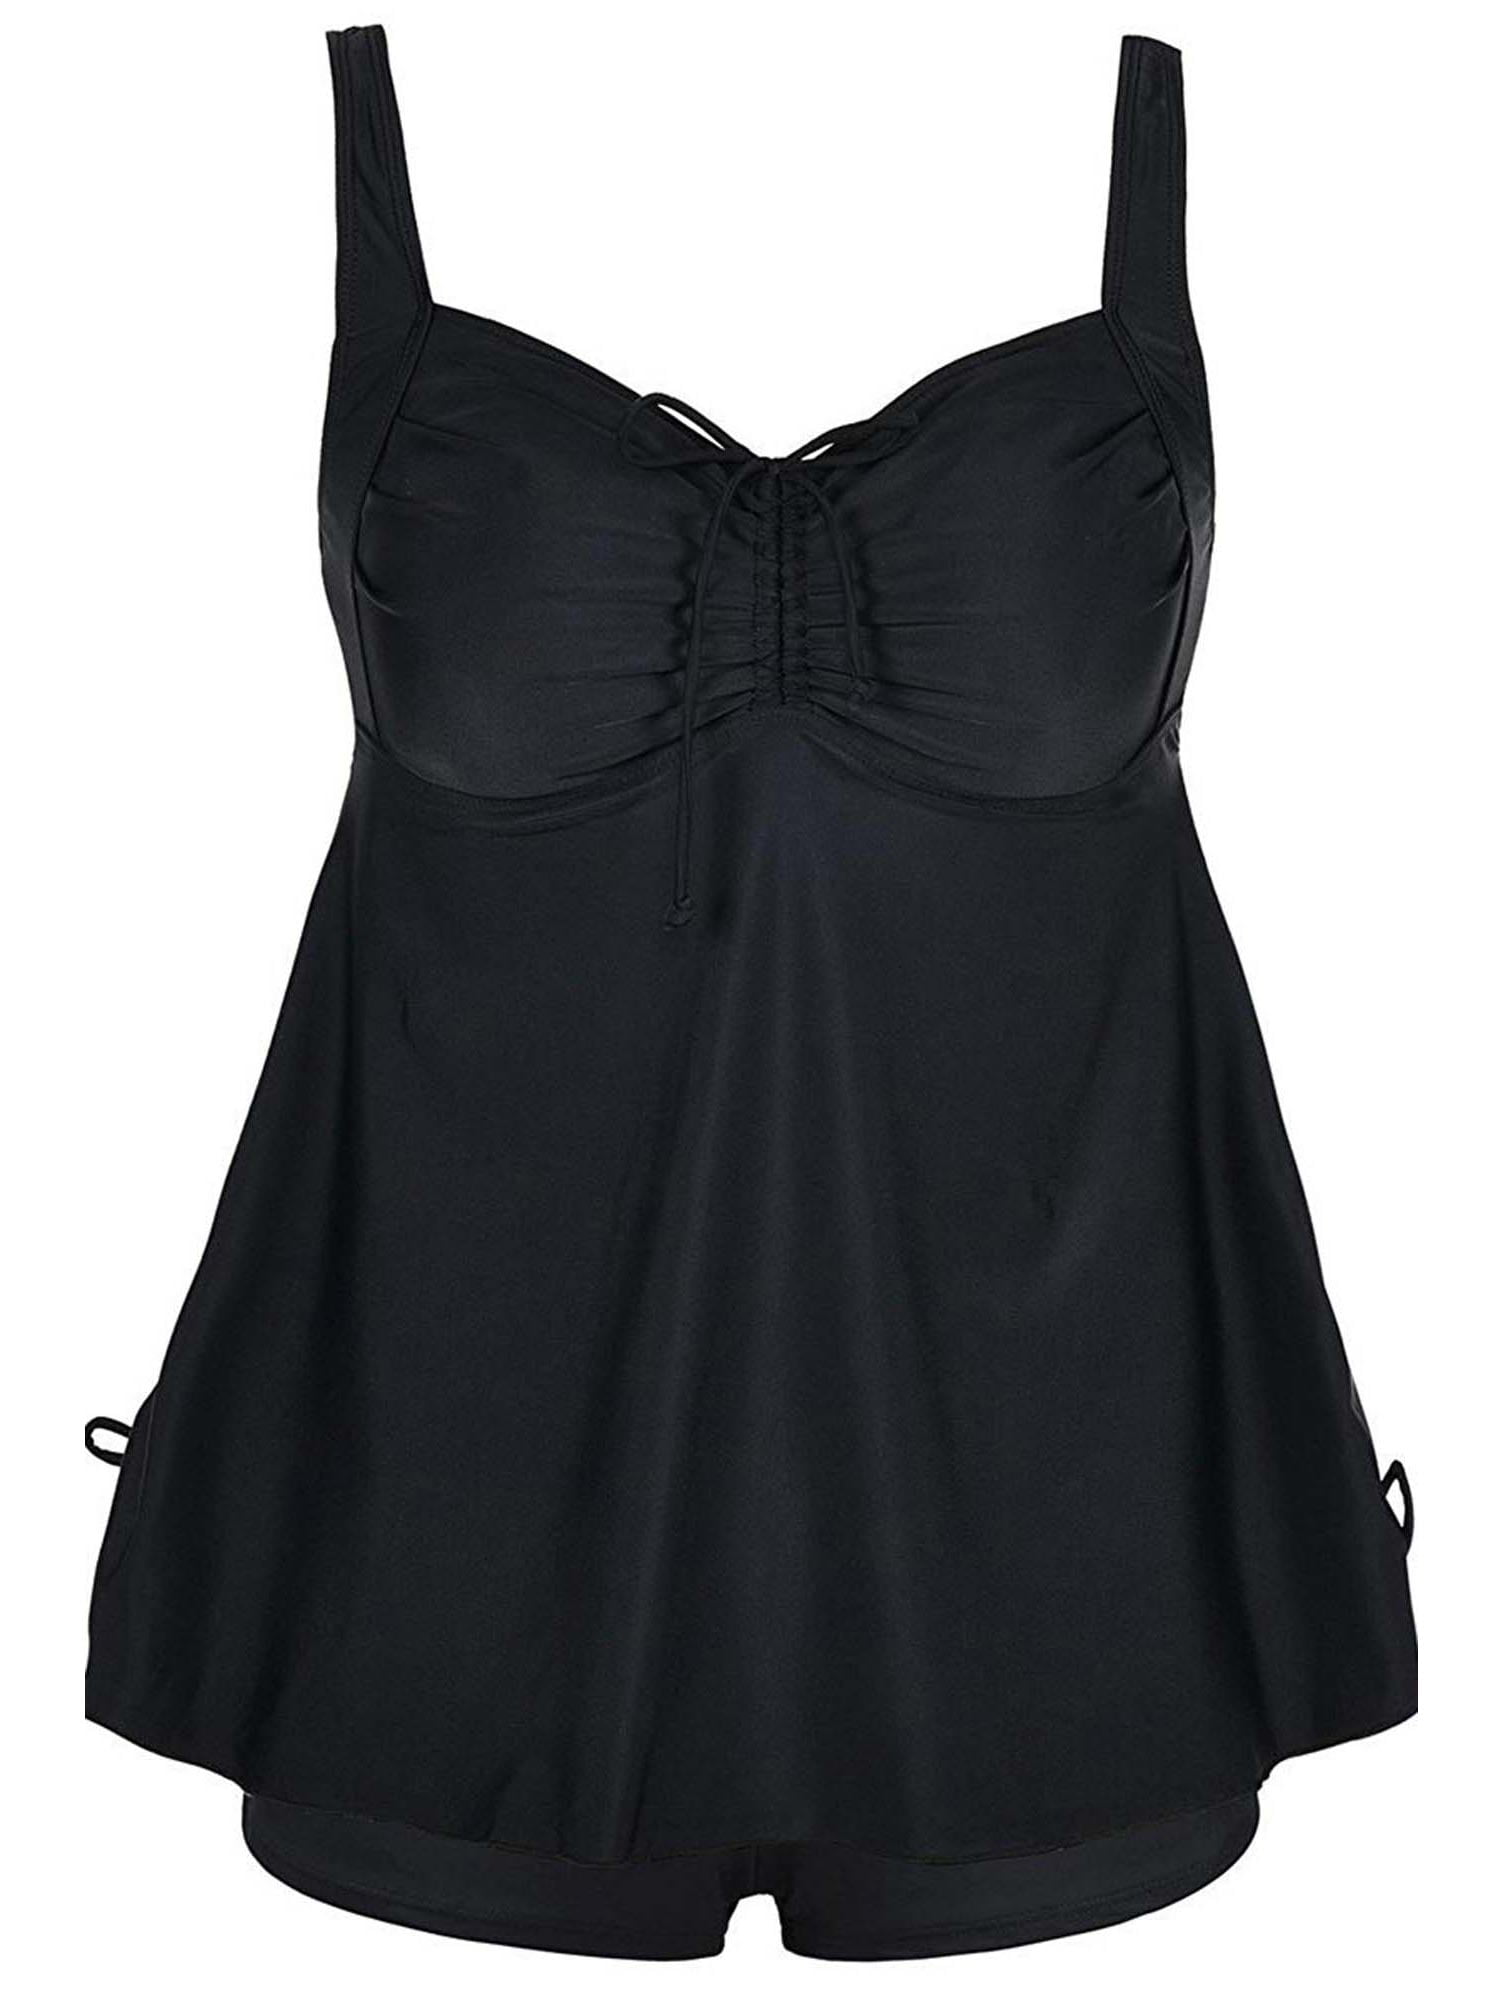 Angelique Women's Plus Size Tie Back Fashion Cinch Swimsuit Tankini Set ...